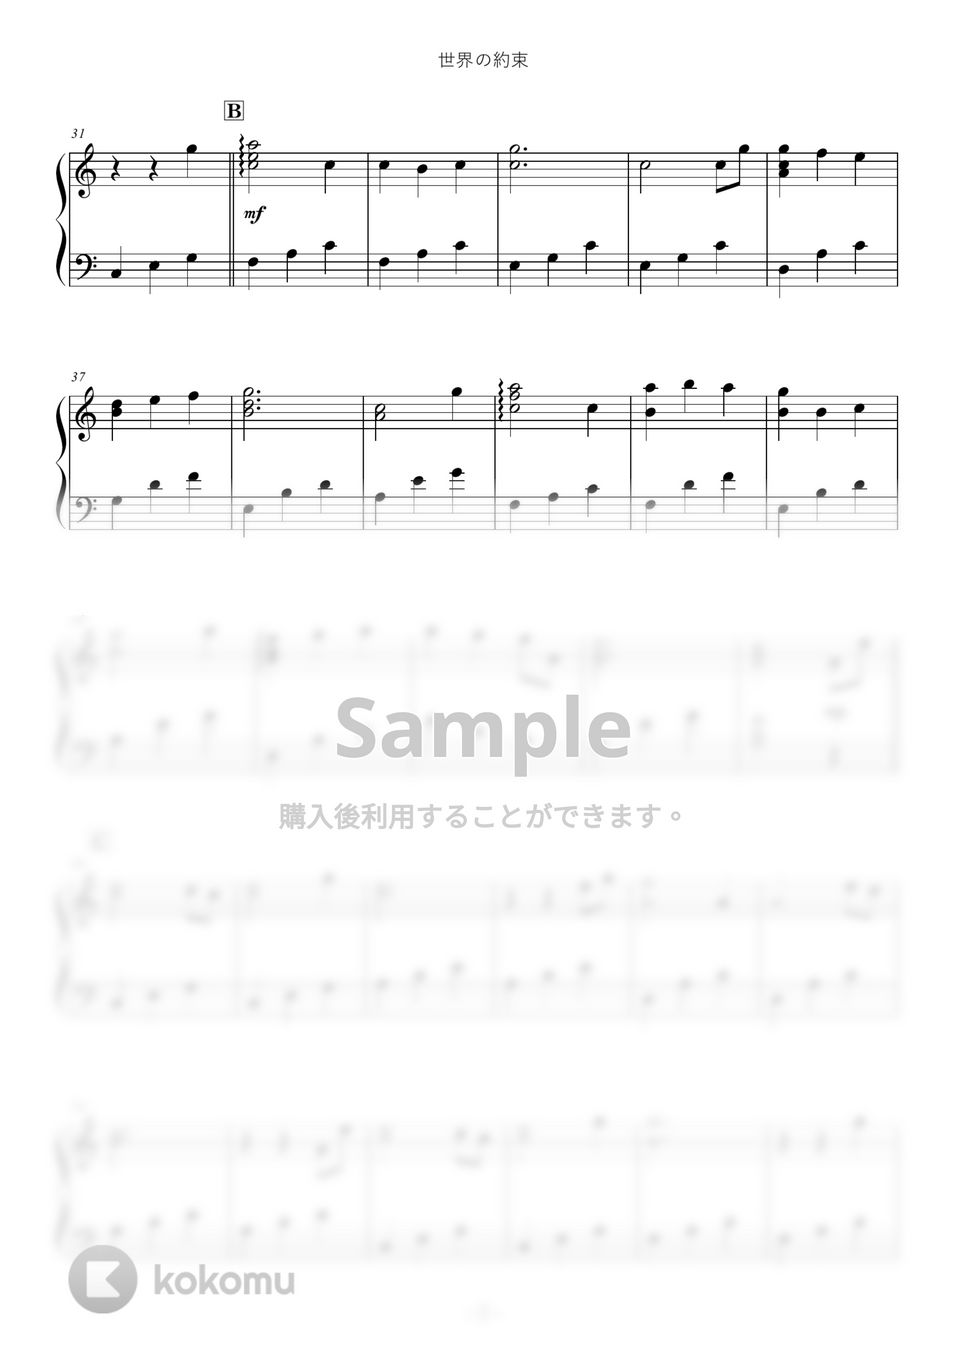 倍賞千恵子 - 世界の約束 by ABIA Music